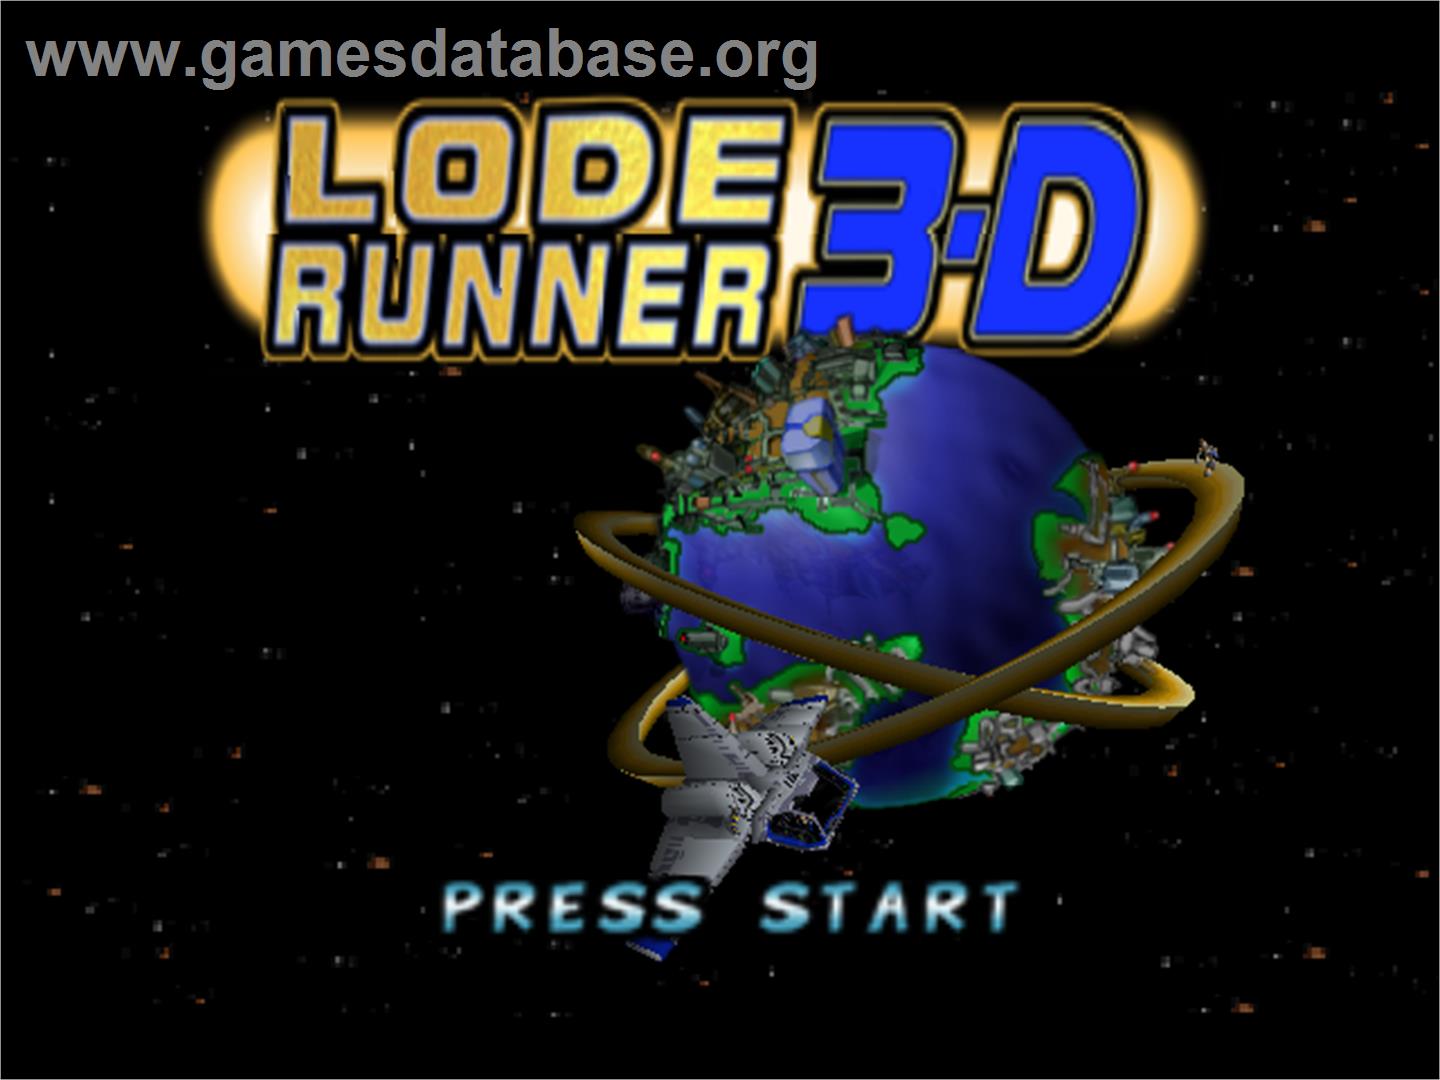 Lode Runner 3D - Nintendo N64 - Artwork - Title Screen